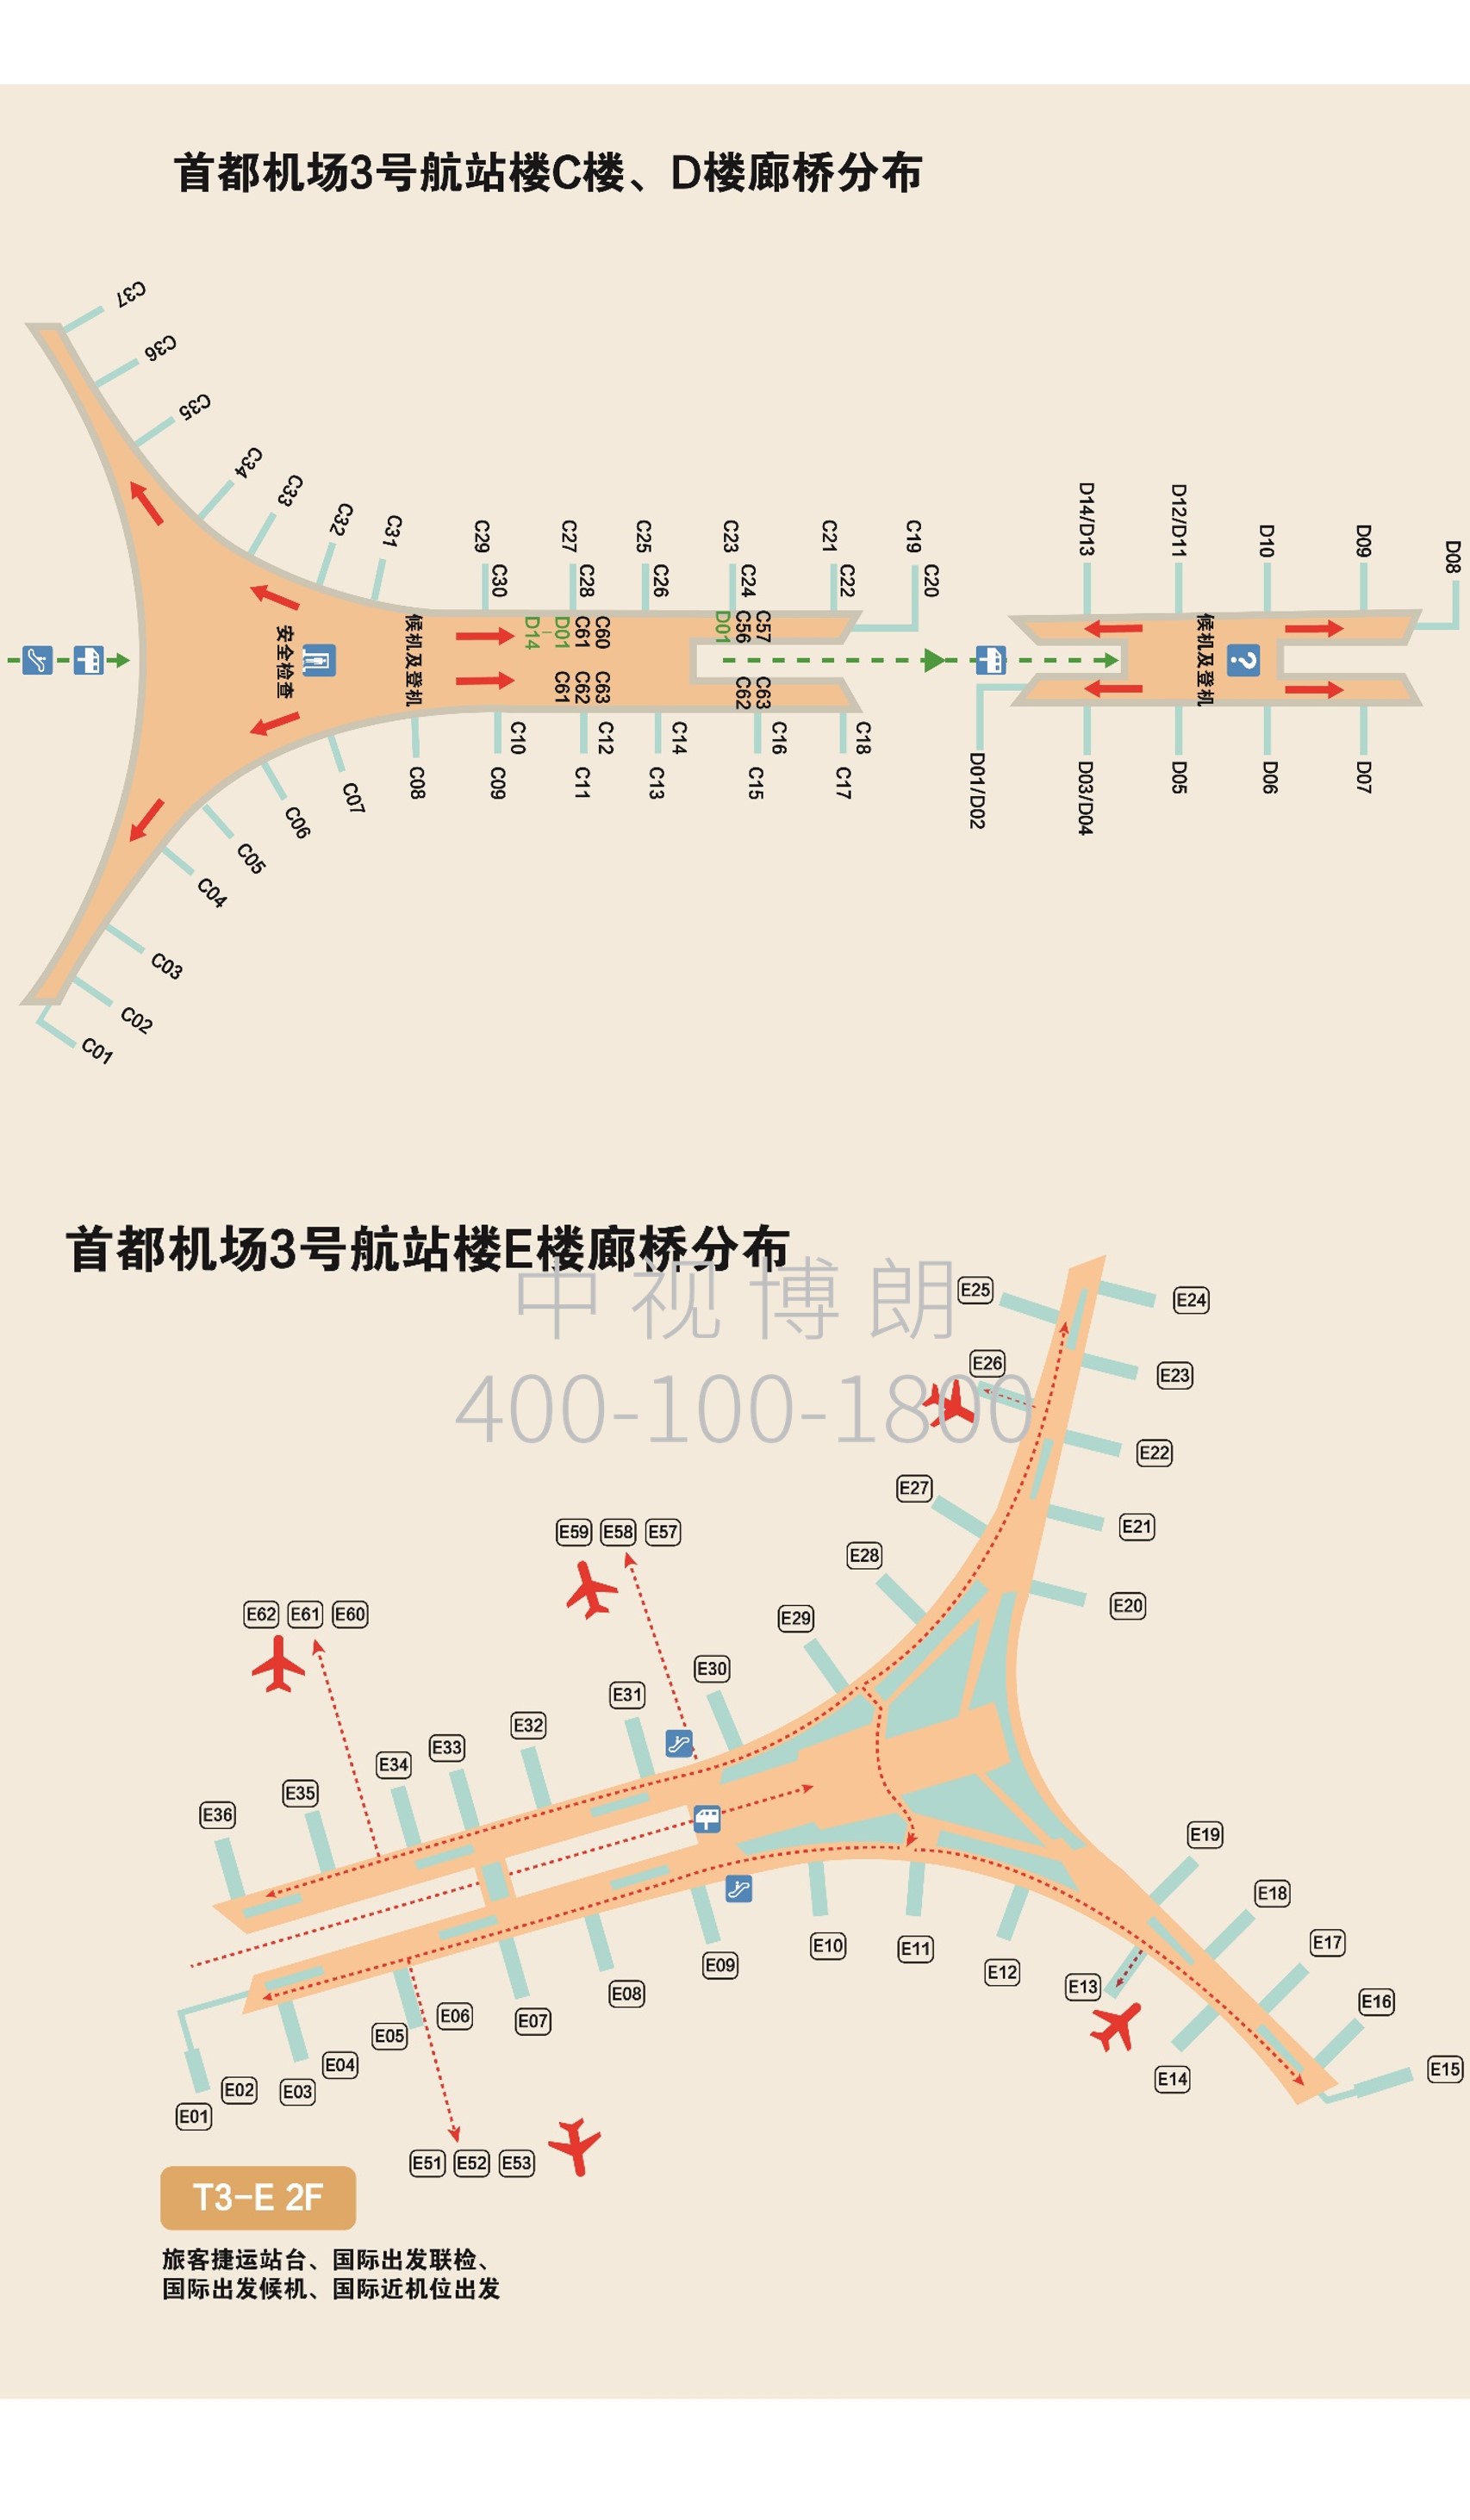 北京首都机场广告-T3内廊桥看板套装1-4位置图